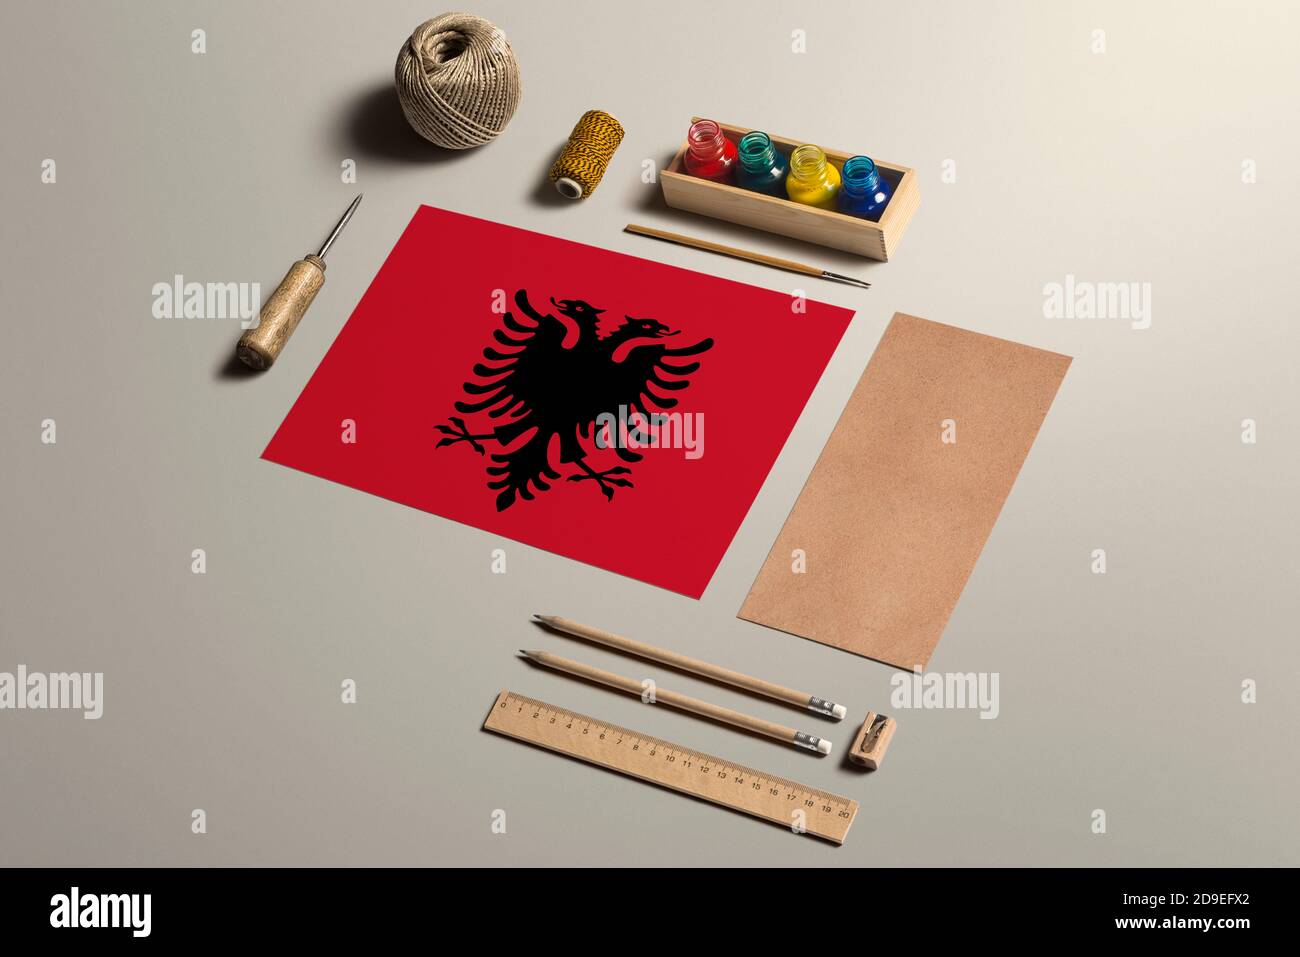 Albania calligrafia concetto, accessori e strumenti per bella